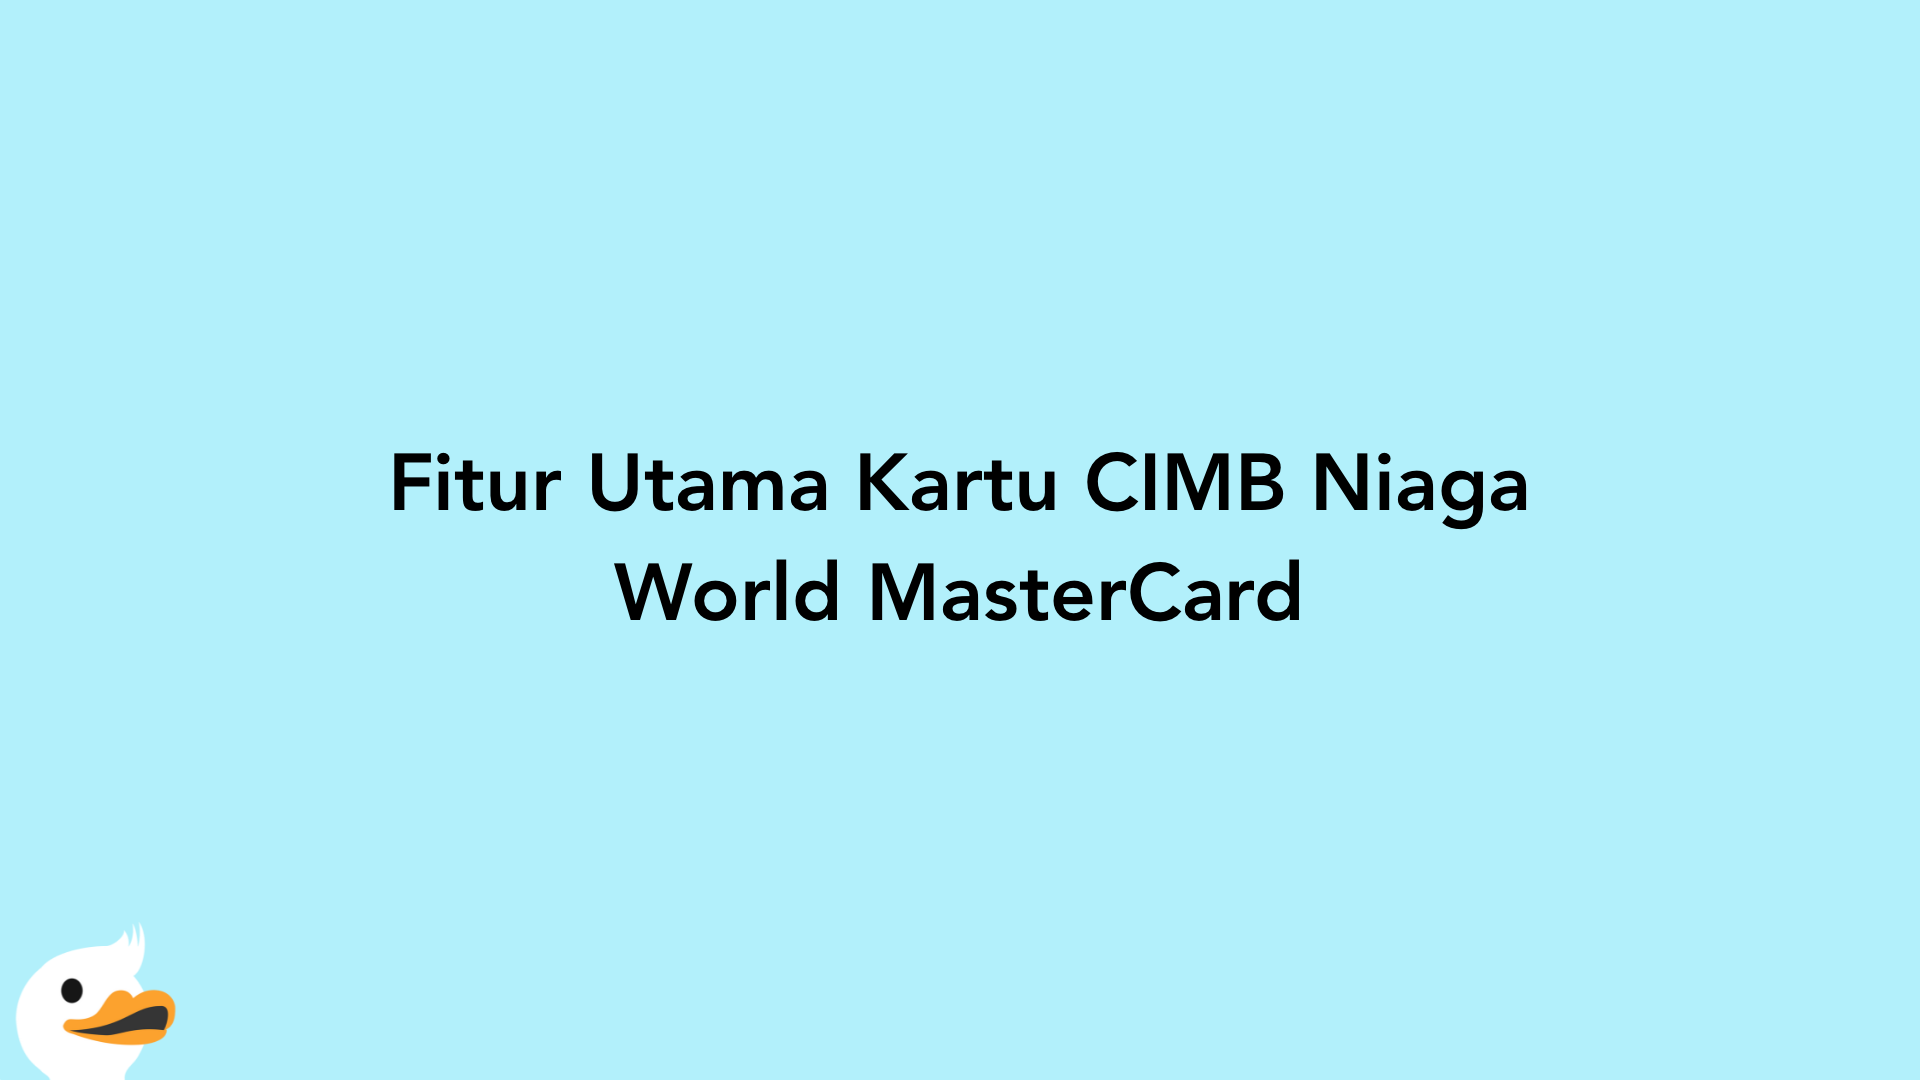 Fitur Utama Kartu CIMB Niaga World MasterCard